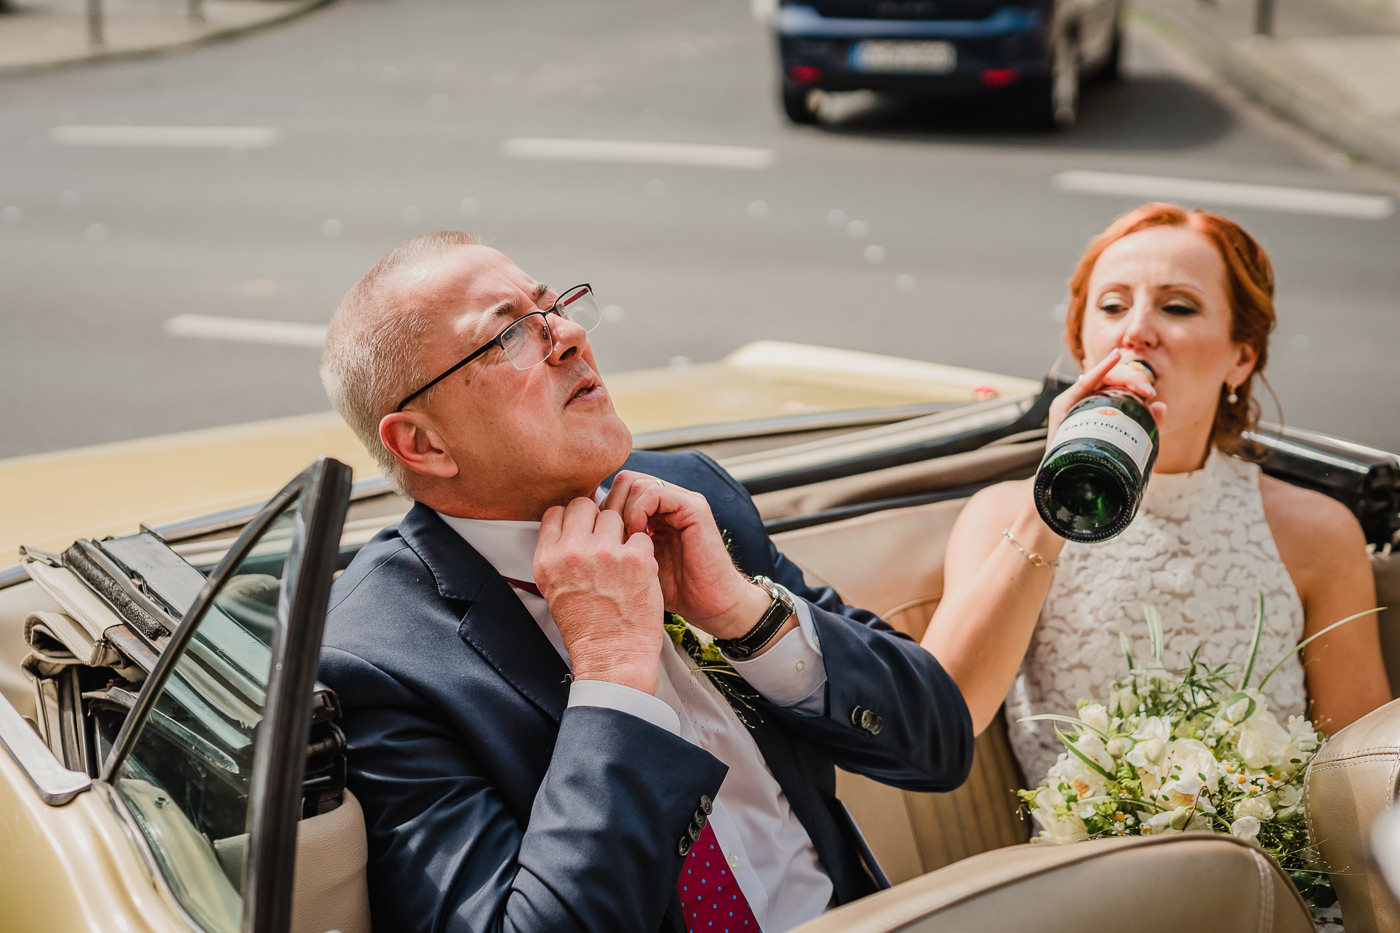 Hochzeitsfotografin-Hagen-Hochzeitsfotograf-Ruhrgebiet-lumoid-Nadine-Lotze-Hagen-Hochzeitsreportage-045-62-Koeln-Standesamt-Rathaus-Cabrio-Mustang-Champagner